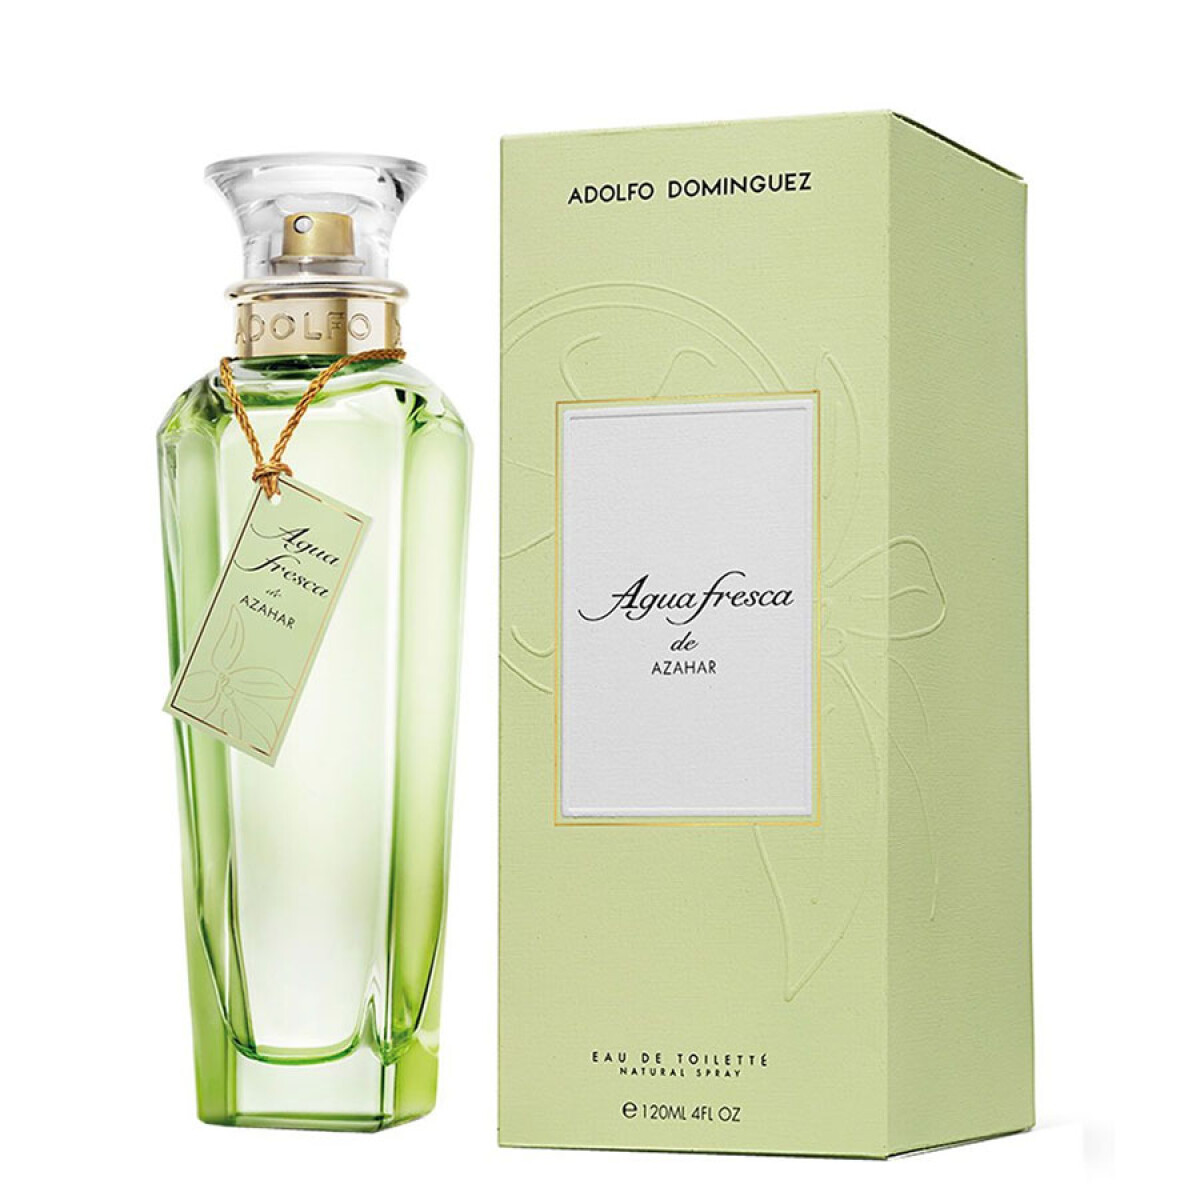 Perfume Adolfo Dominguez Agua Fresca Azhar 120 Ml - 001 